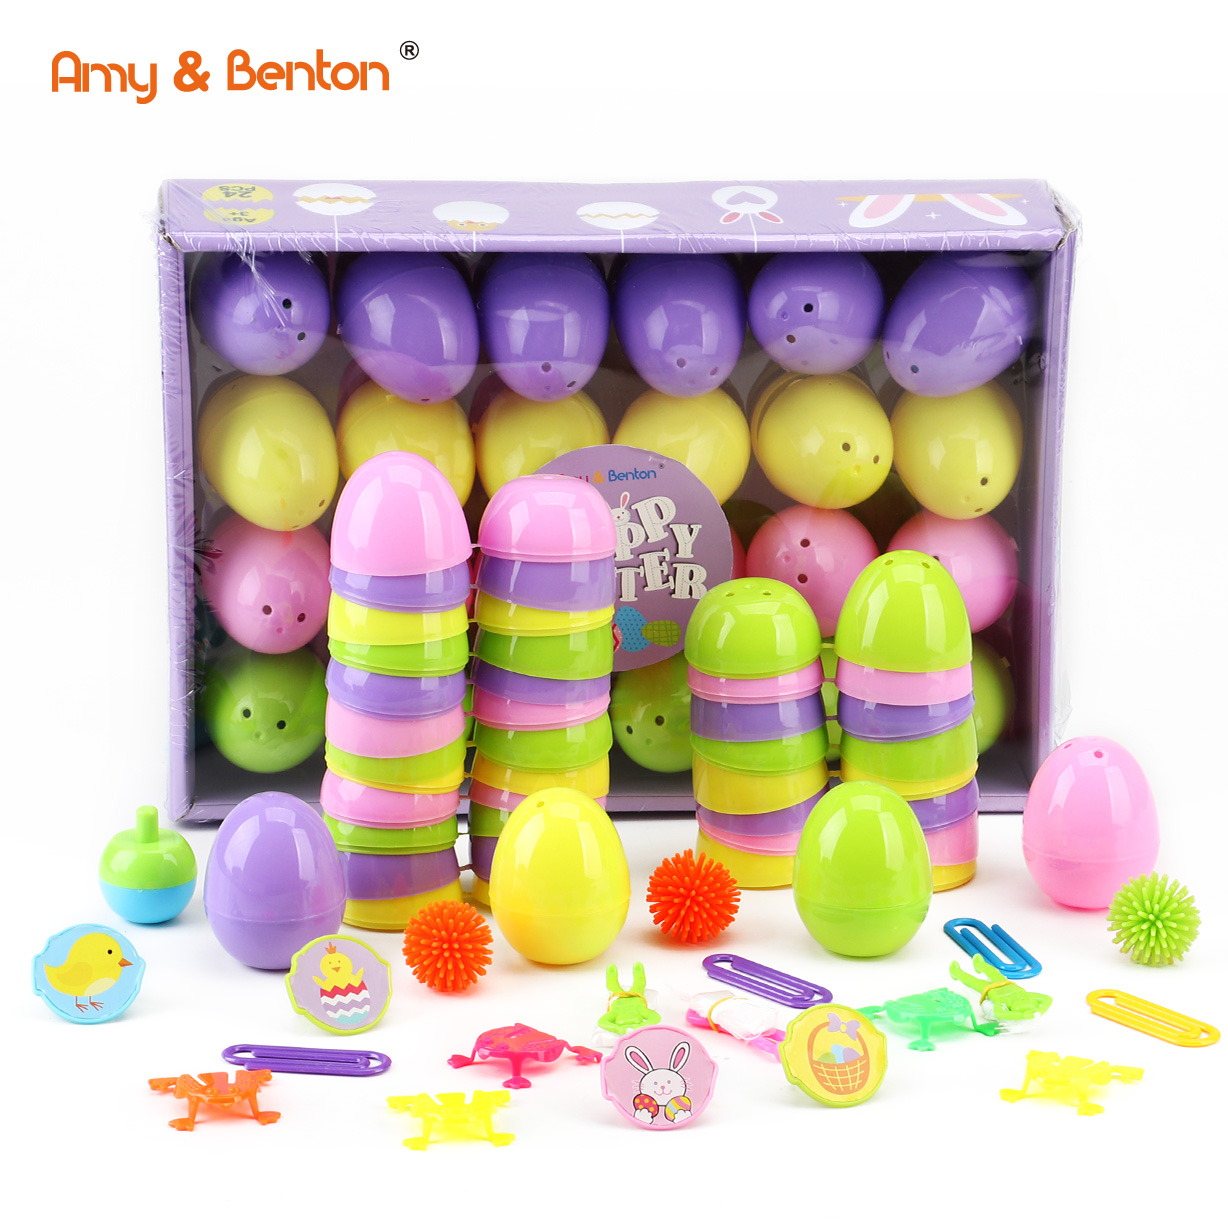 Festa e Pashkëve favorizon vezë surprizë plastike me lodra të reja